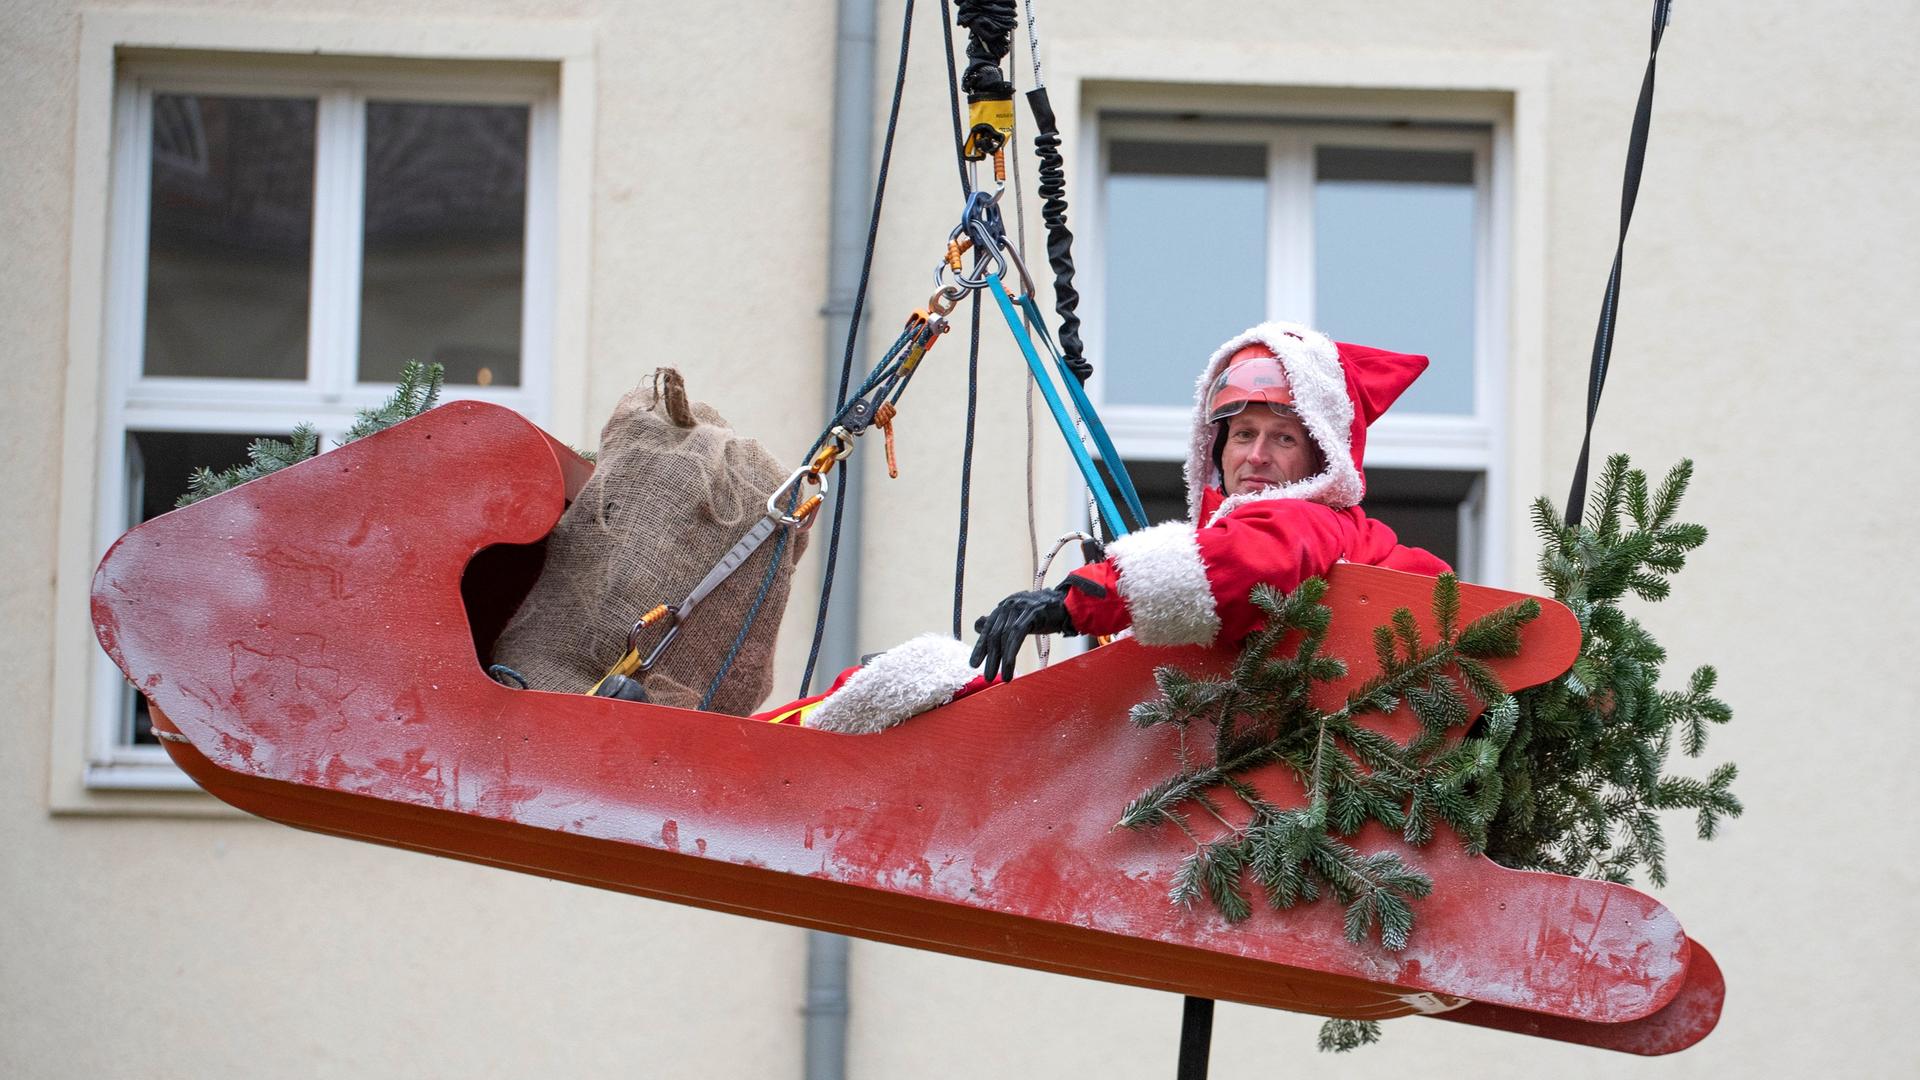 Ein großer roter Schlitten, in dem ein als Nikolaus verkleideter Mann sitzt, schwebt vor einem Haus in der Luft, gehalten von einem starken Zugseil.